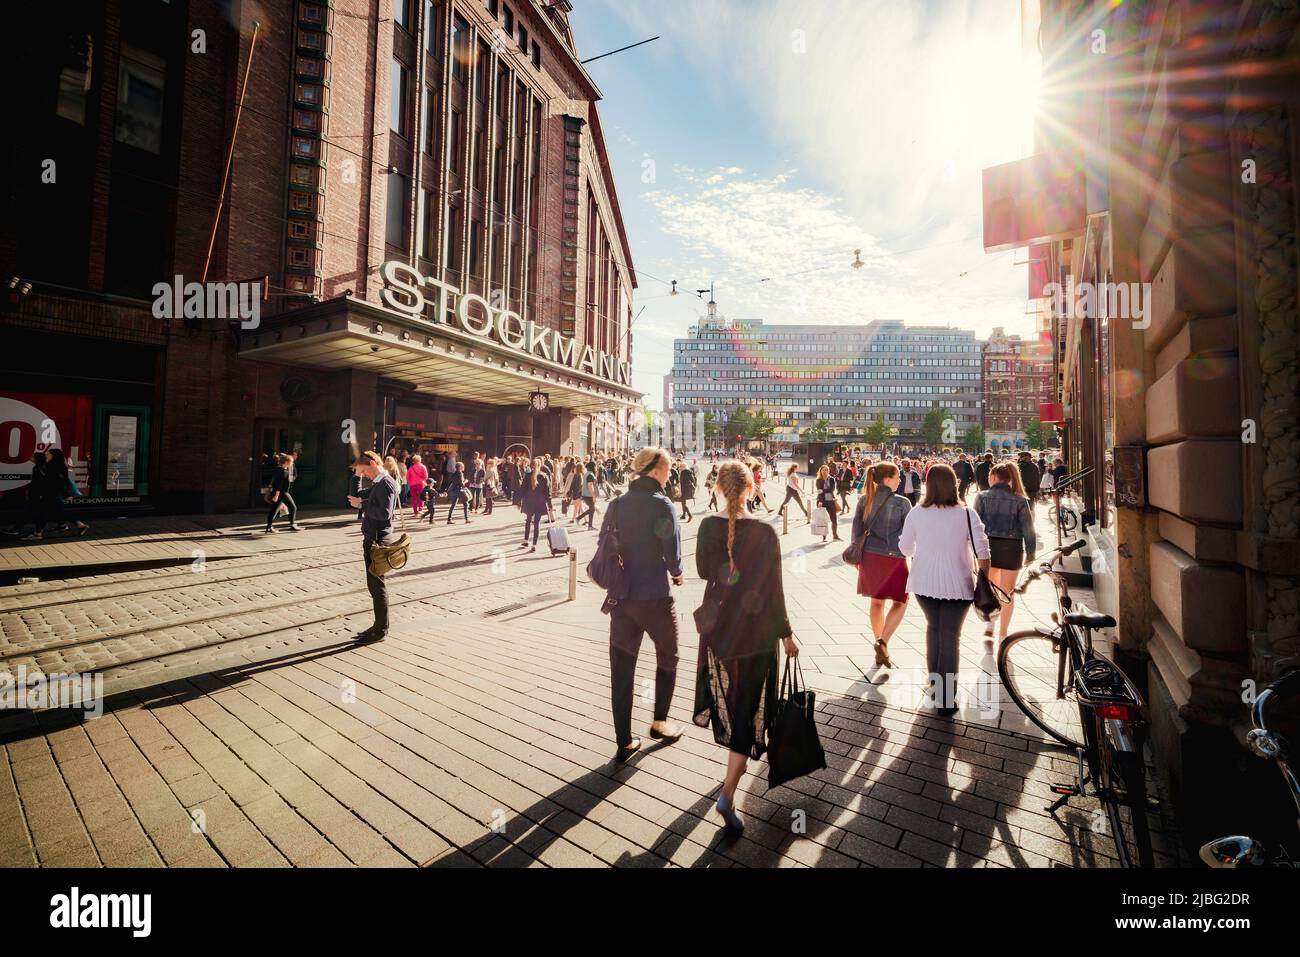 Pedestrians on street in Helsinki, Finland Stock Photo